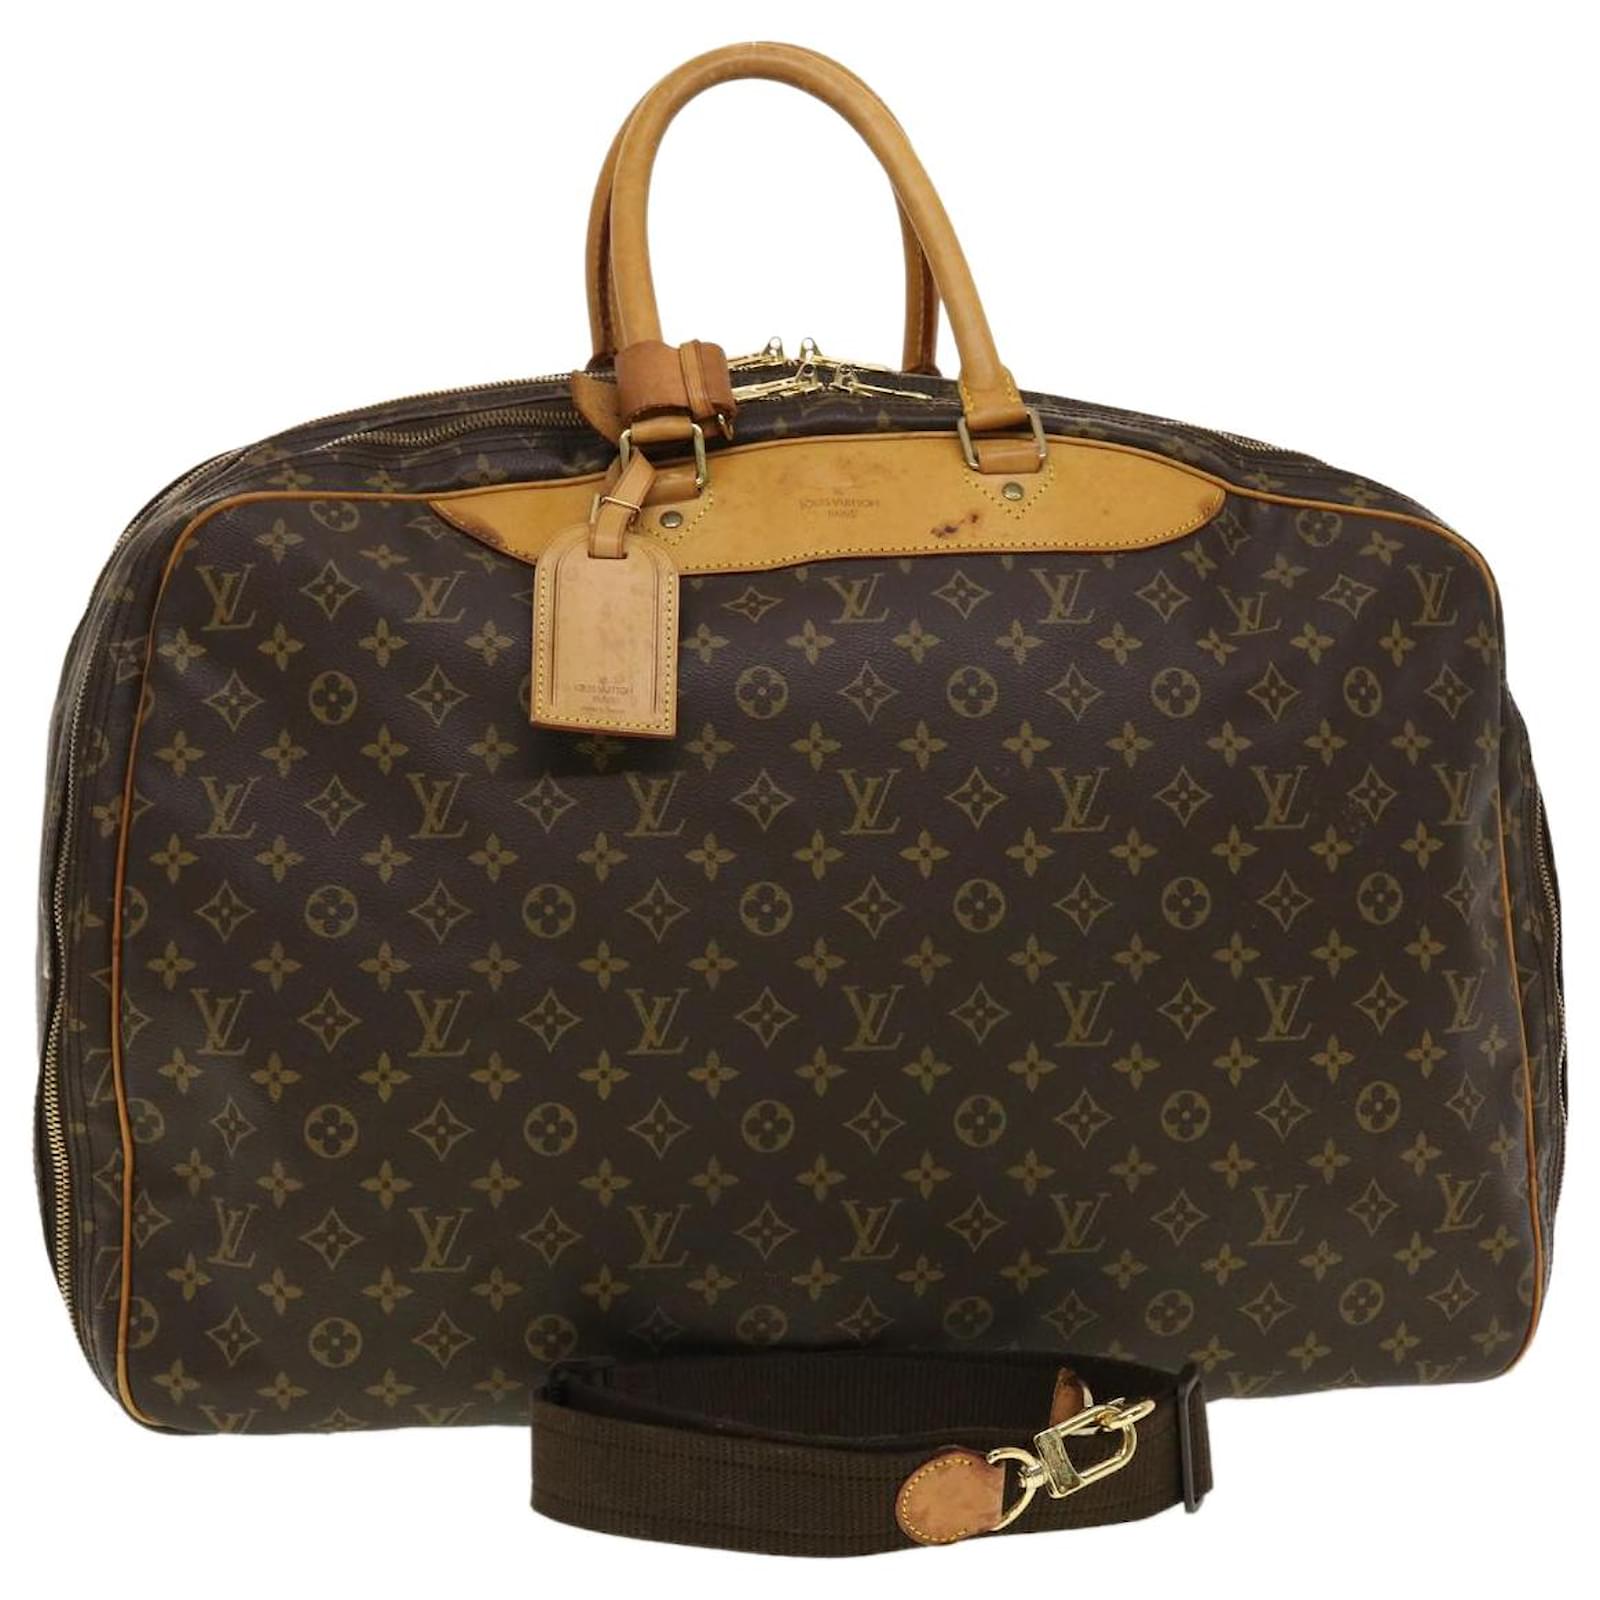 Auth LOUIS VUITTON Alize 2 Poches Monogram Suitcase Travel Bag